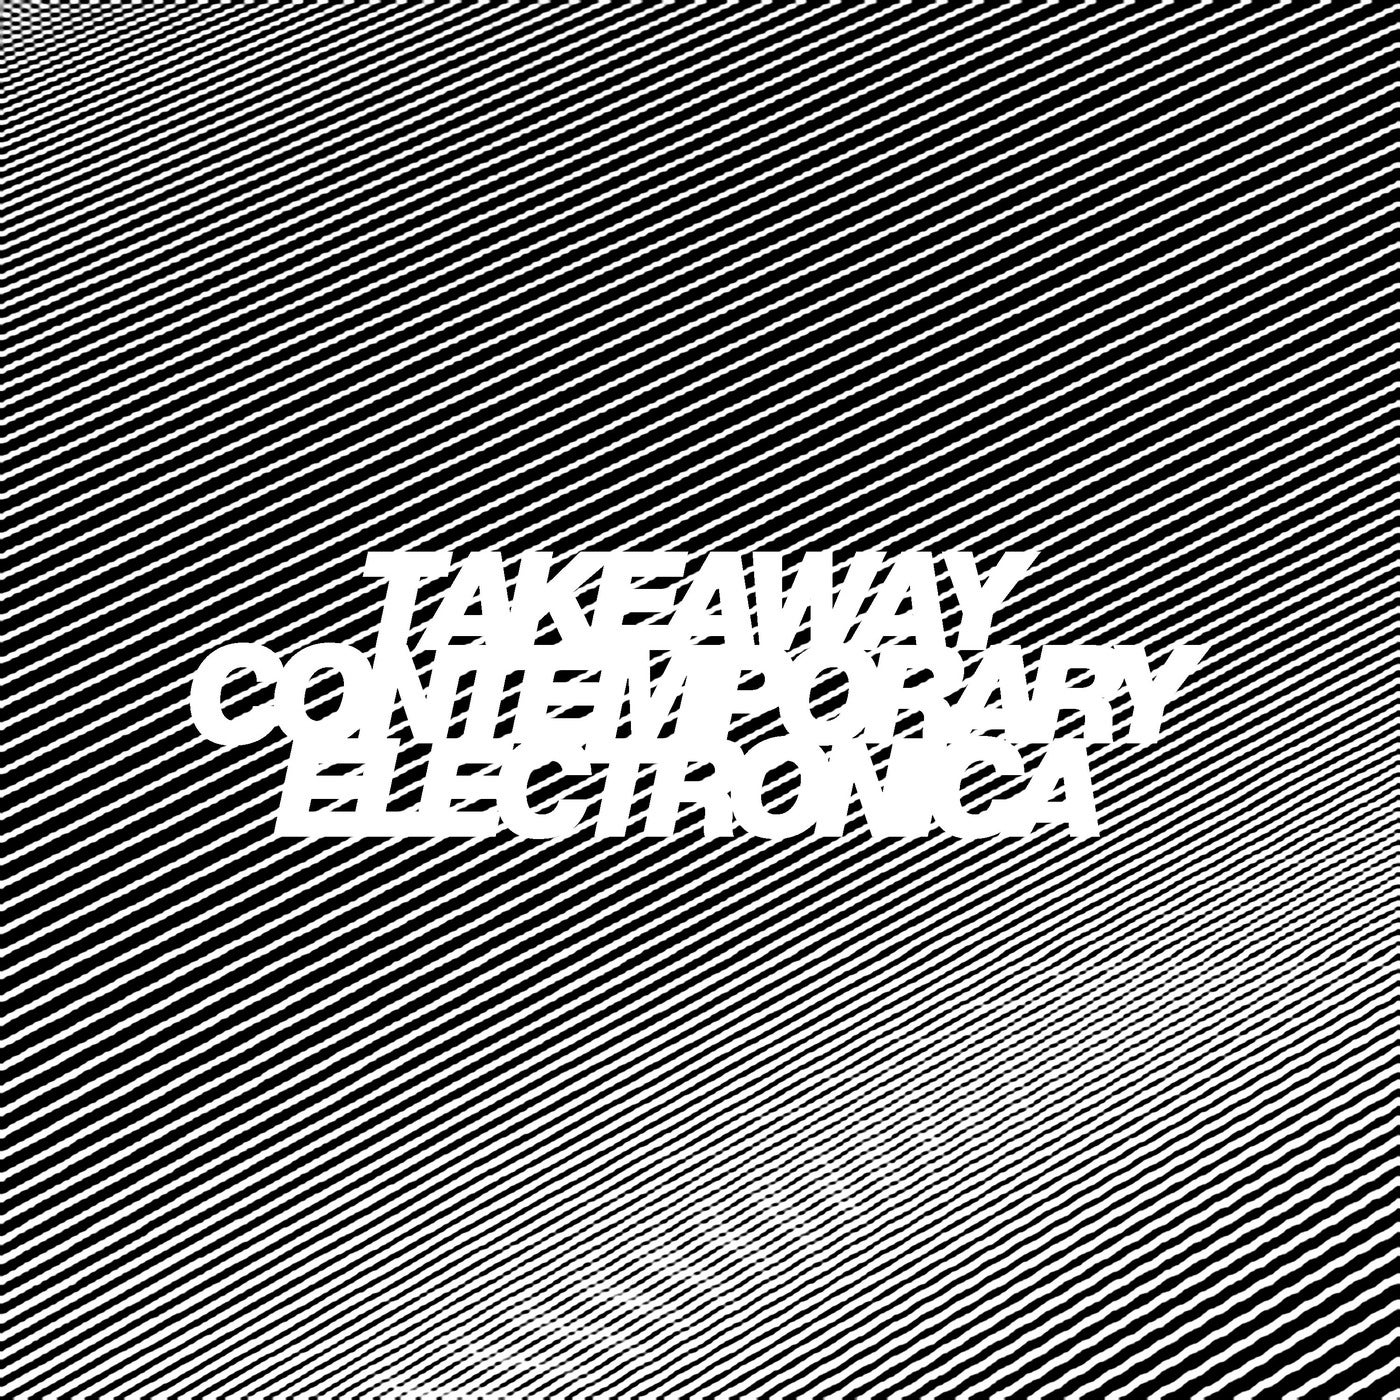 Contemporary Electronica